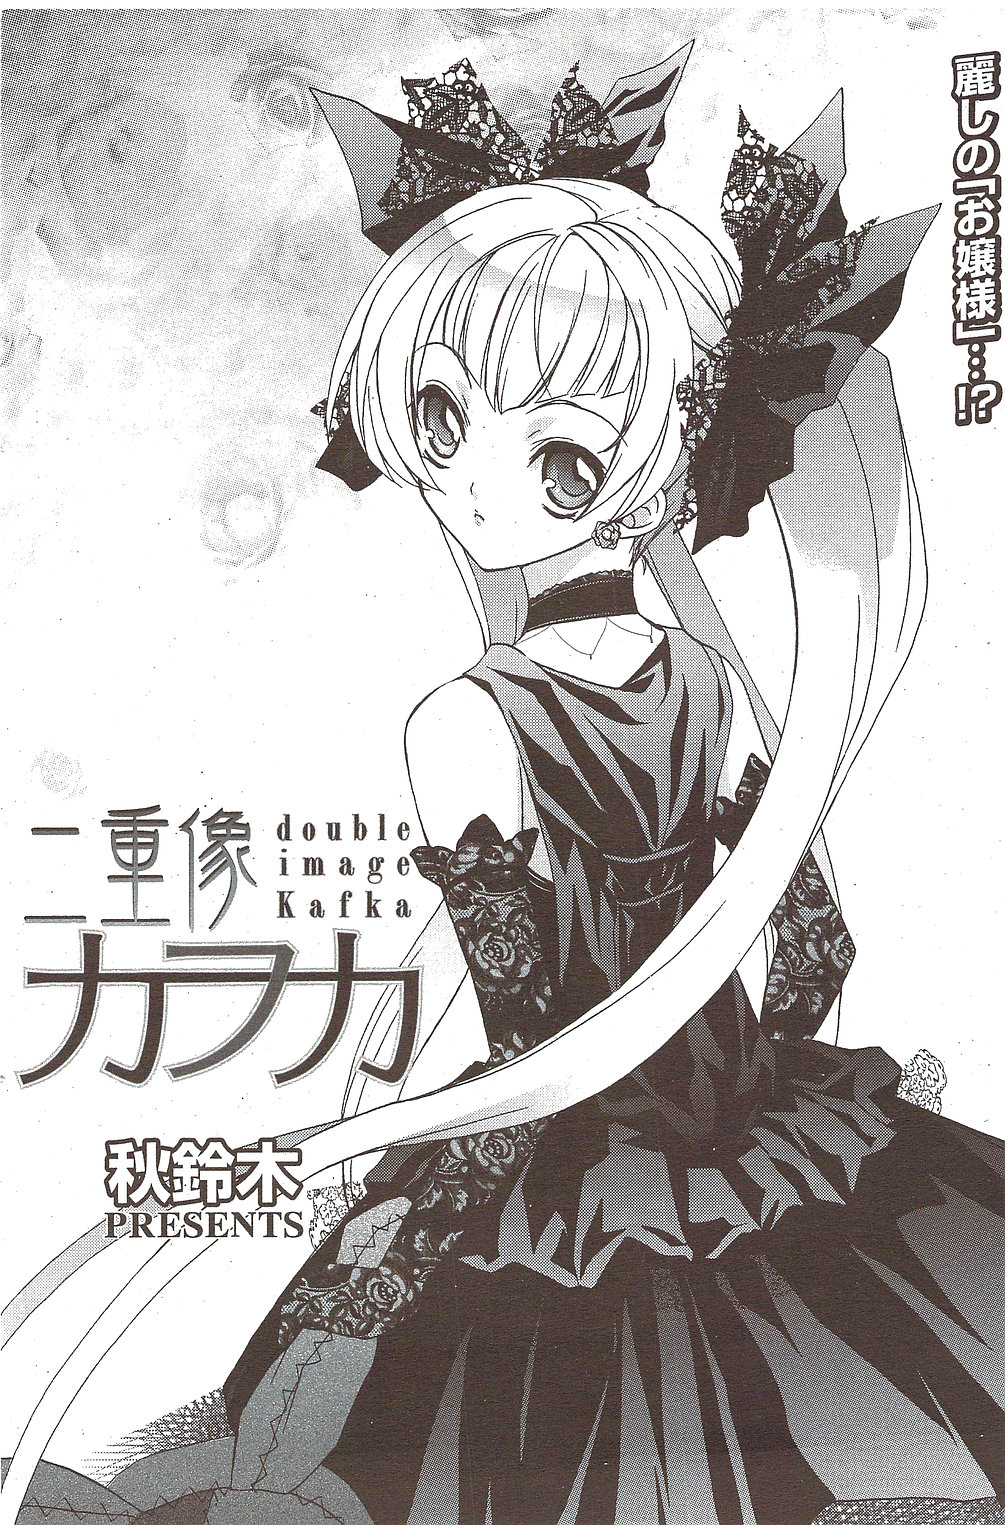 Manga Bangaichi 2009-10 漫画ばんがいち 2009年10月号